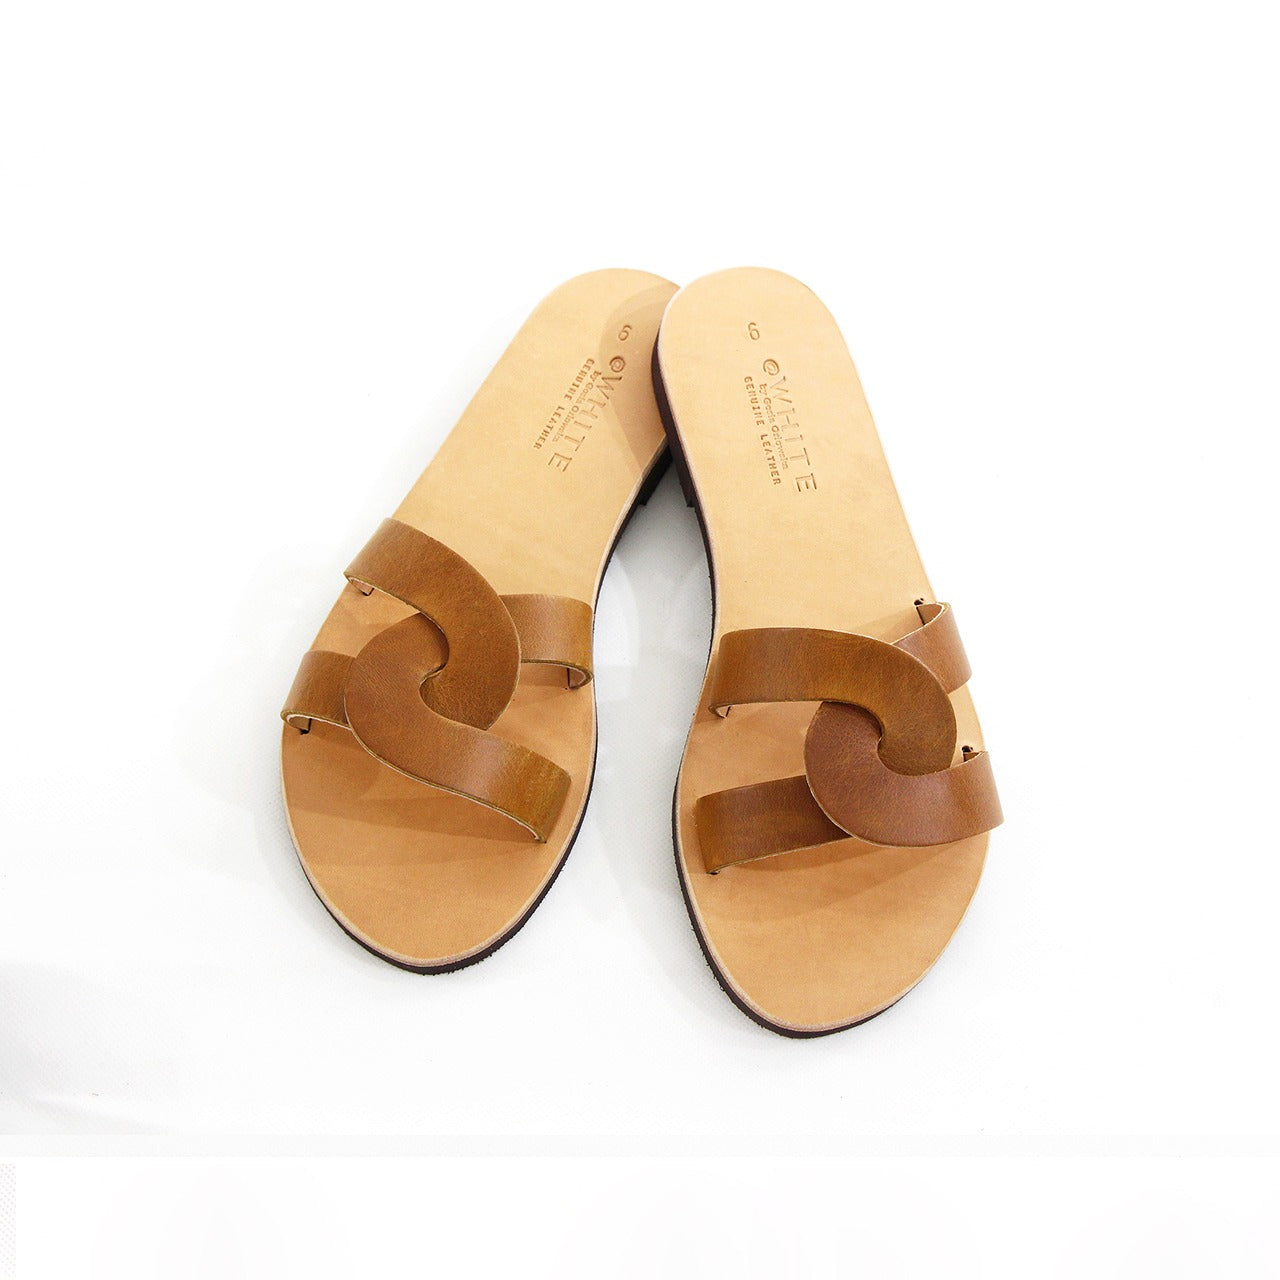 @WHITE / Harmonia leather sandals - TAN